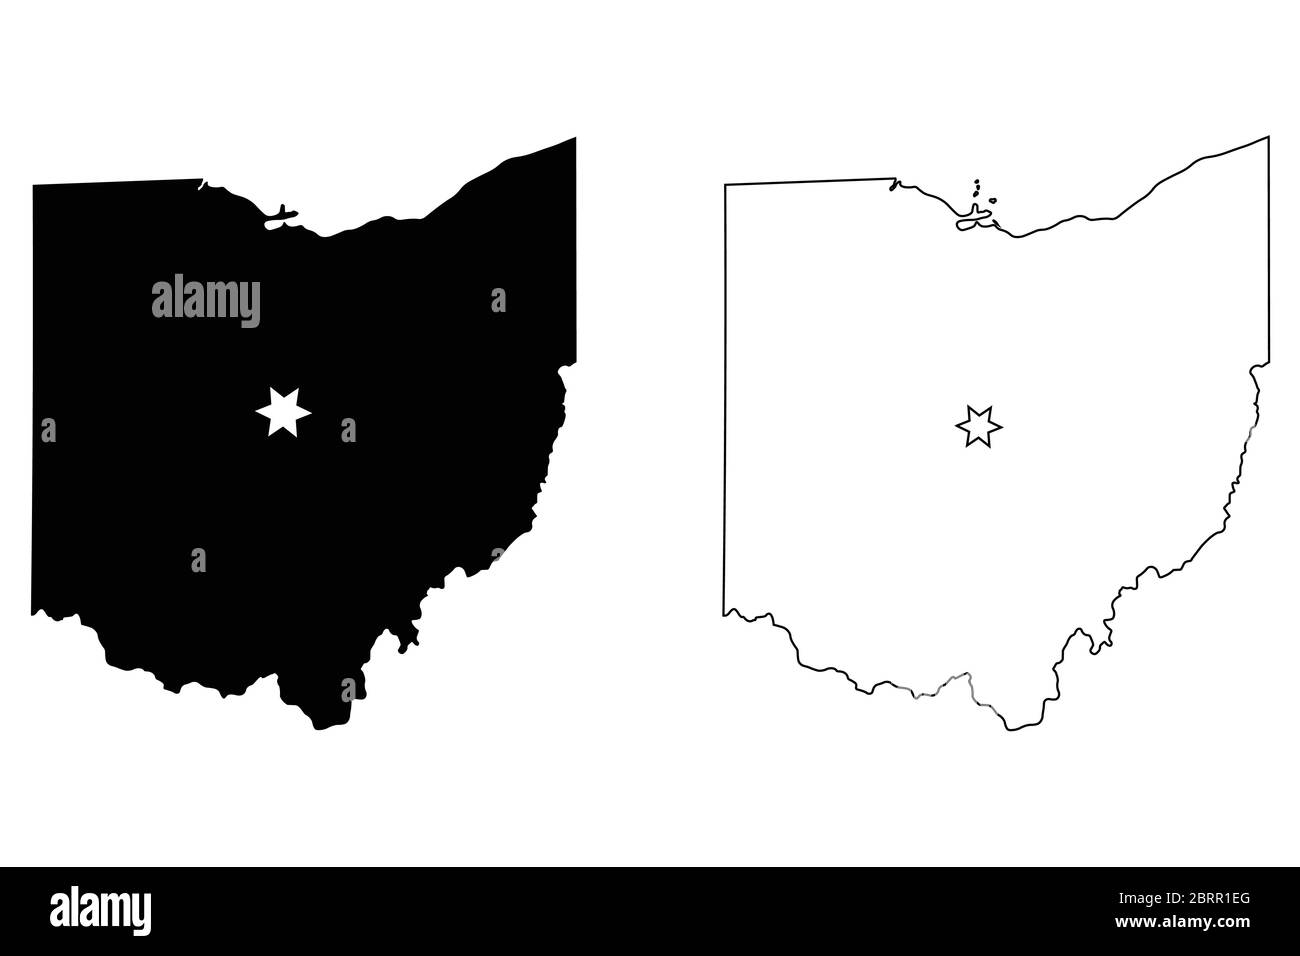 Ohio OH carte de l'État des États-Unis avec Capital City Star à Columbus. Silhouette et contour noirs isolés sur fond blanc. Vecteur EPS Illustration de Vecteur